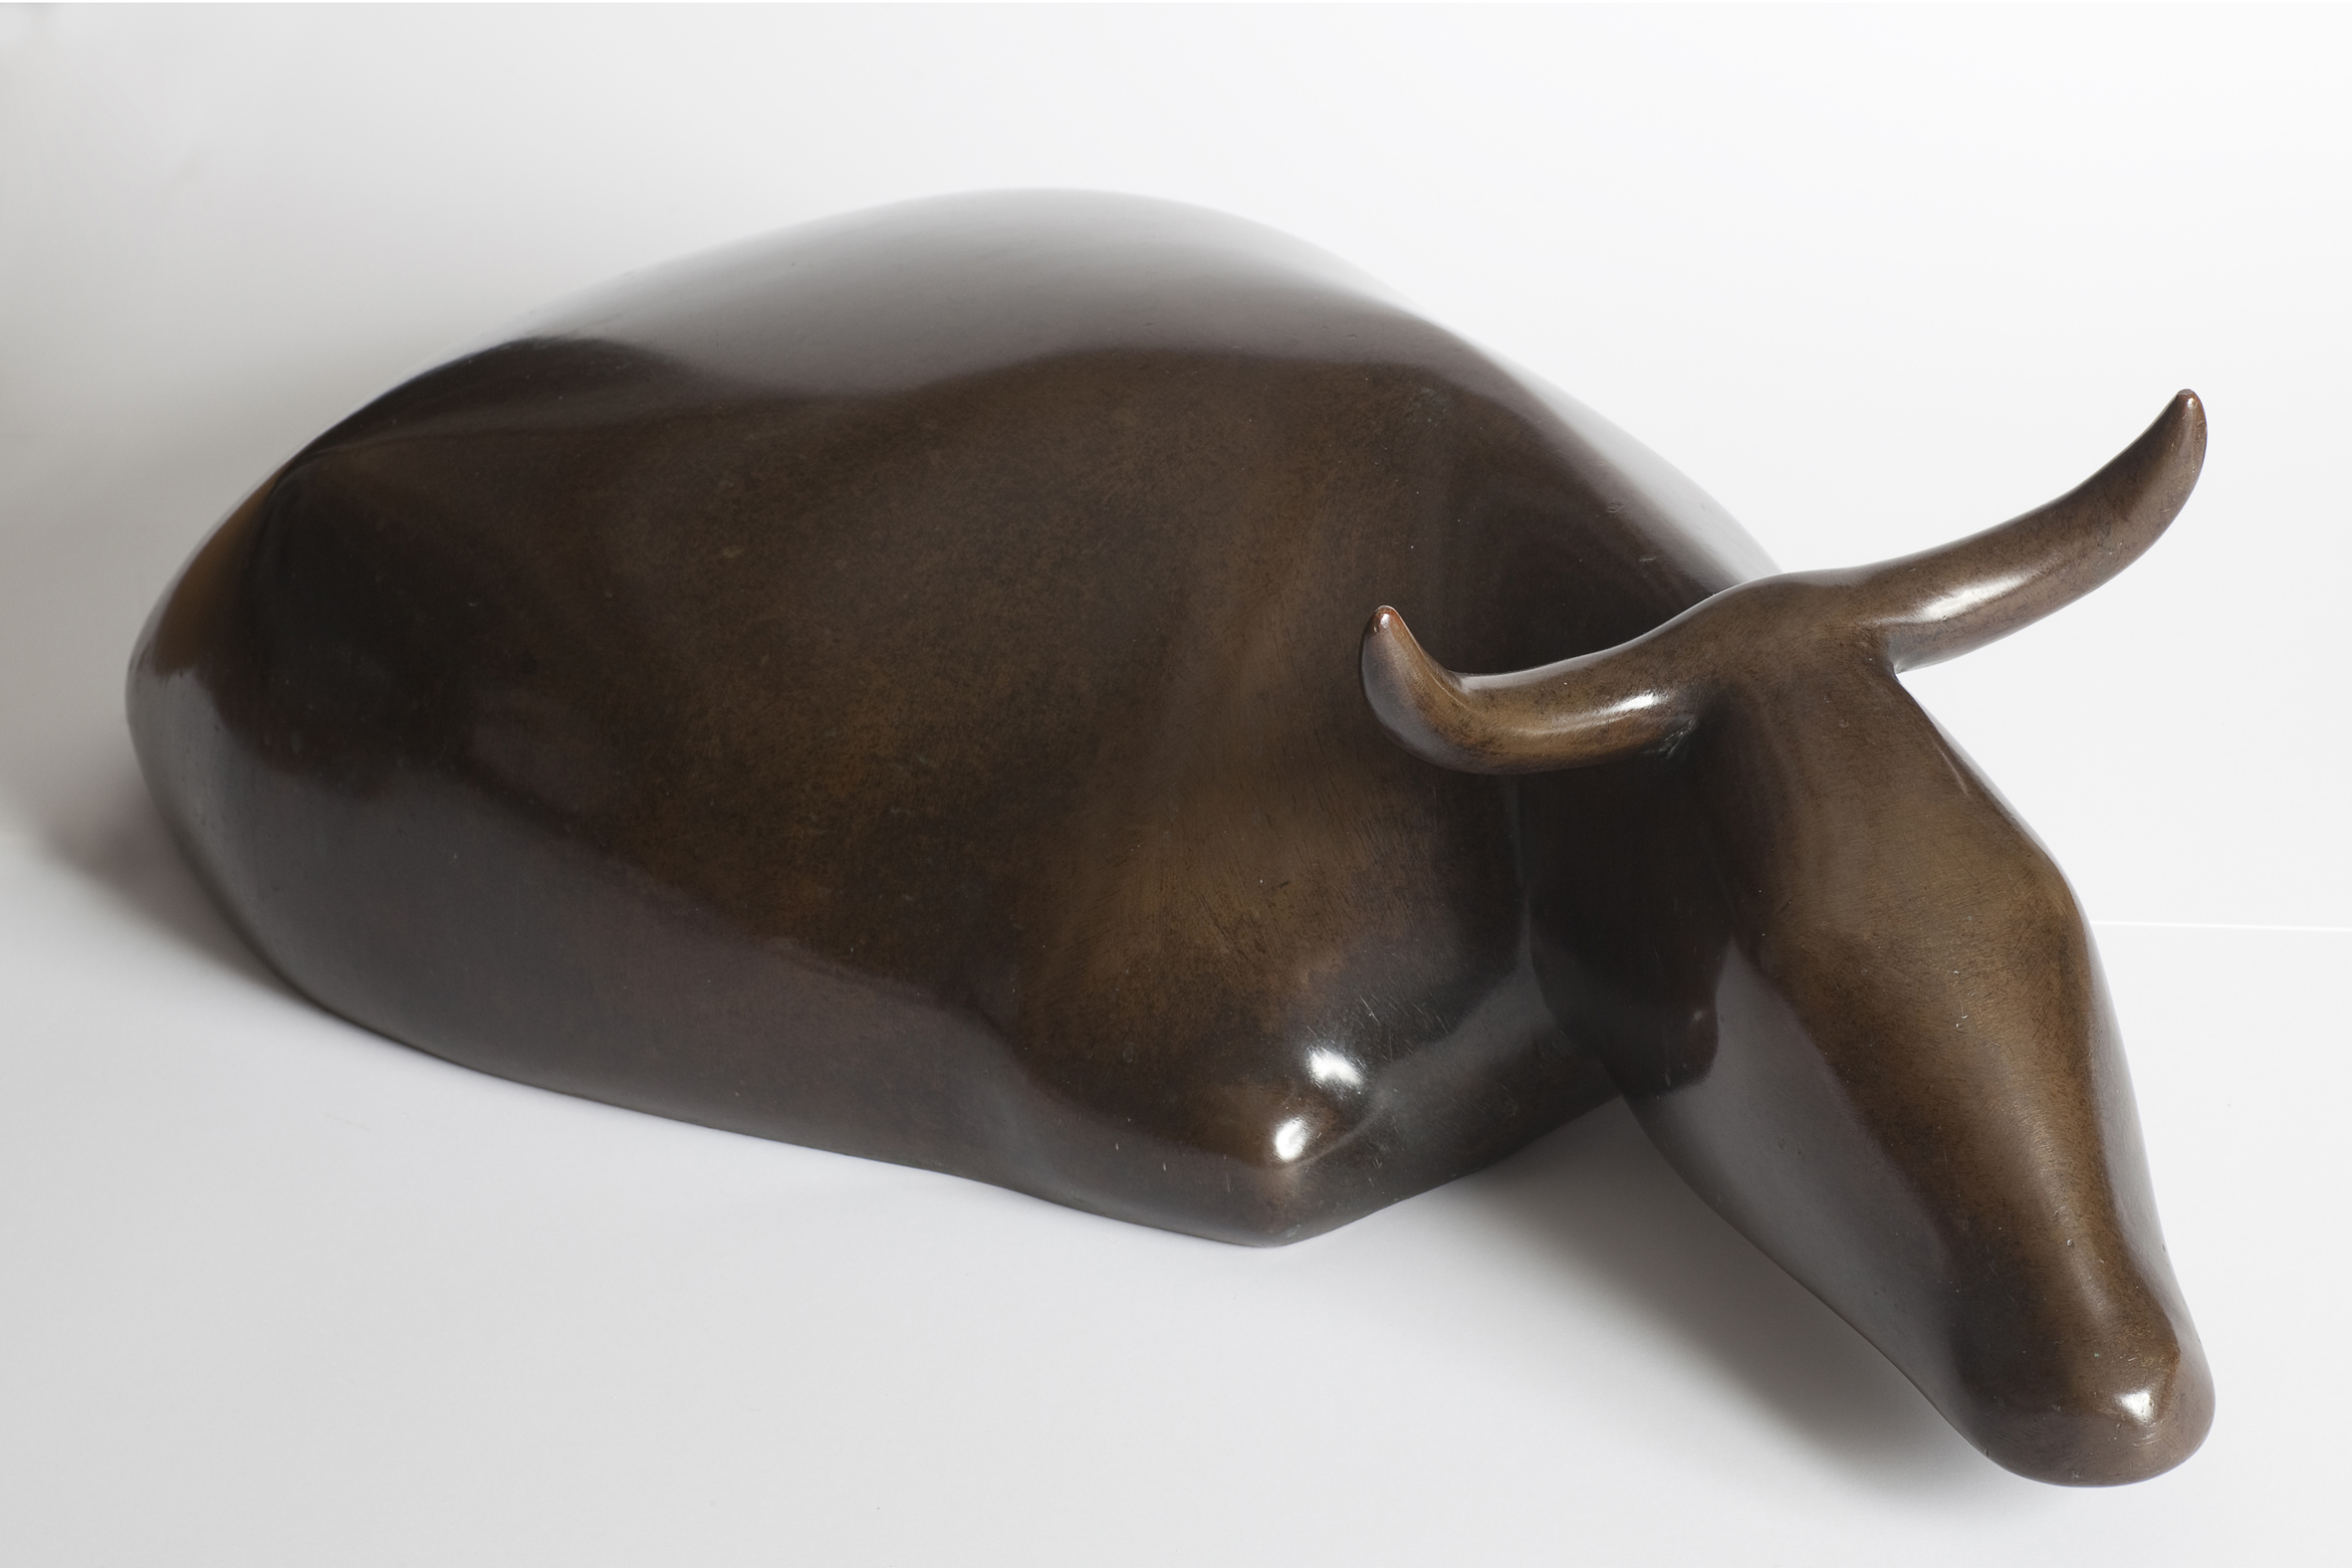 Ewald Mataré. Große liegende Kuh, 1931. Bronzeguss, 16,5 x 55 cm. © VG Bild-Kunst, Bonn 2016. © Foto: Jana Ebert, Berlin